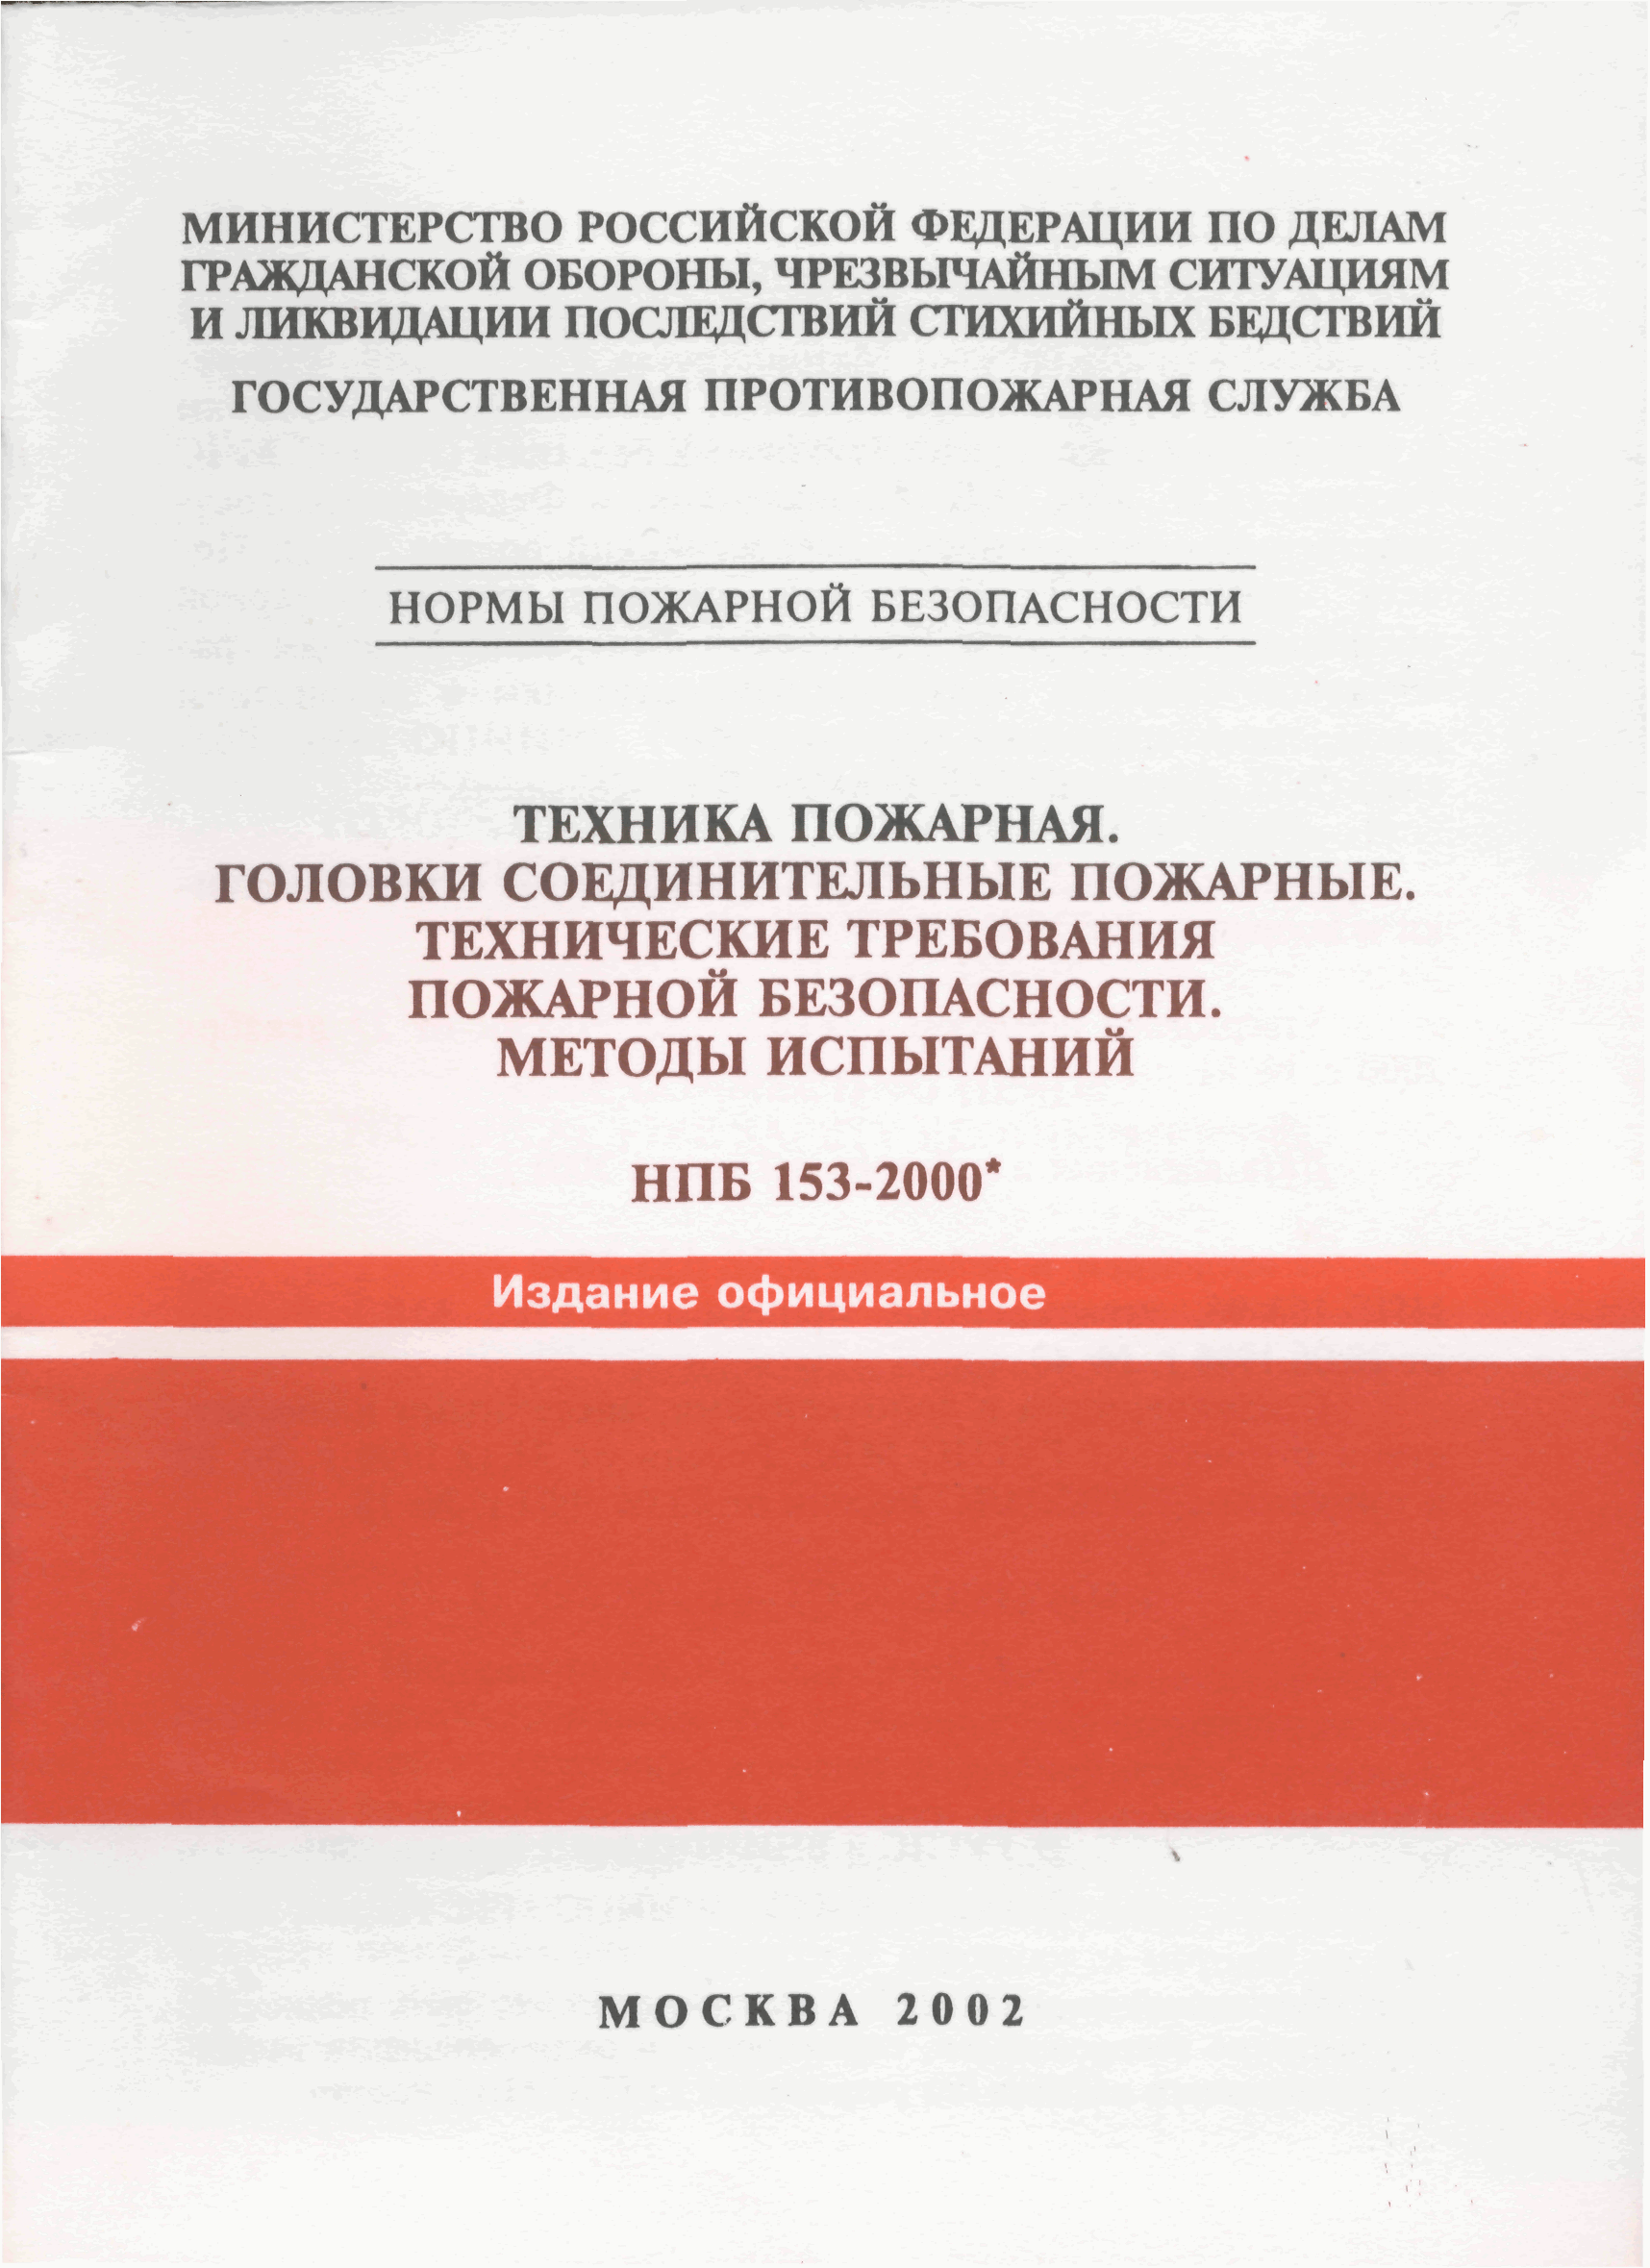 Головки соединительные НПБ 153-2000